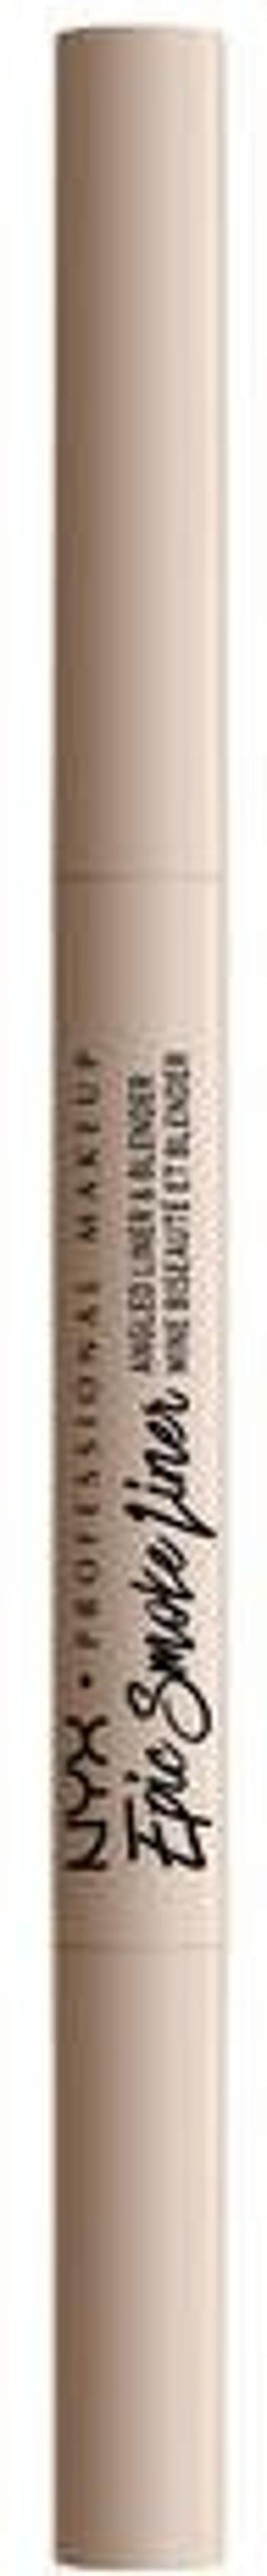 NYX Professional Makeup Epic Smoke Liner dlouhotrvající tužka na oči - 01 White Smoke 0.17 g